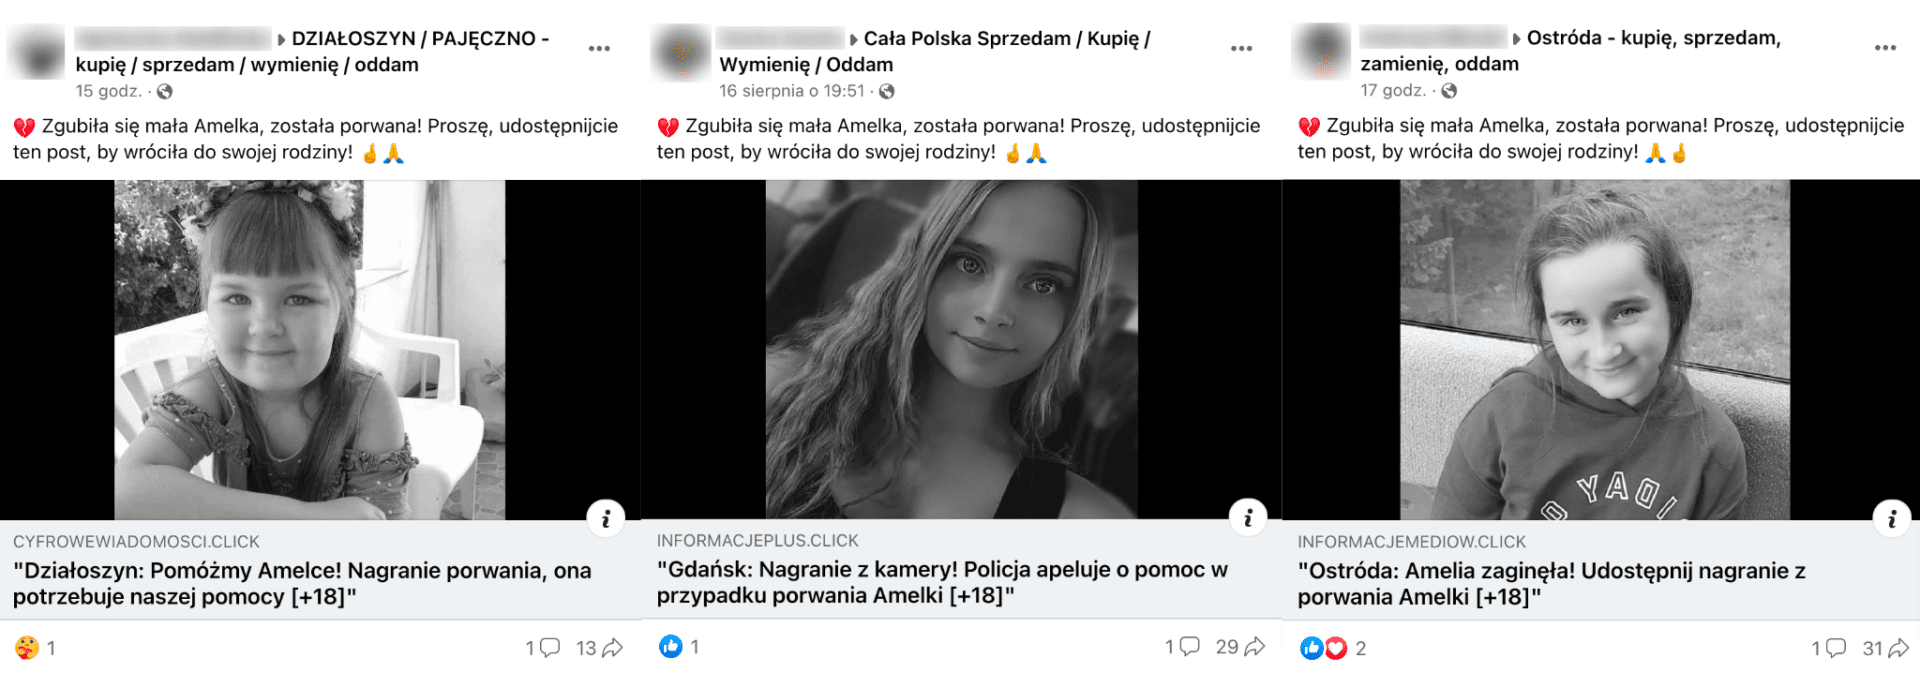 Zrzuty ekranu postów na temat rzekomego porwania Amelki w różnych miejscowościach w Polsce. Widoczna jest identyczna treść postów i zdjęcia różnych dziewczynek.